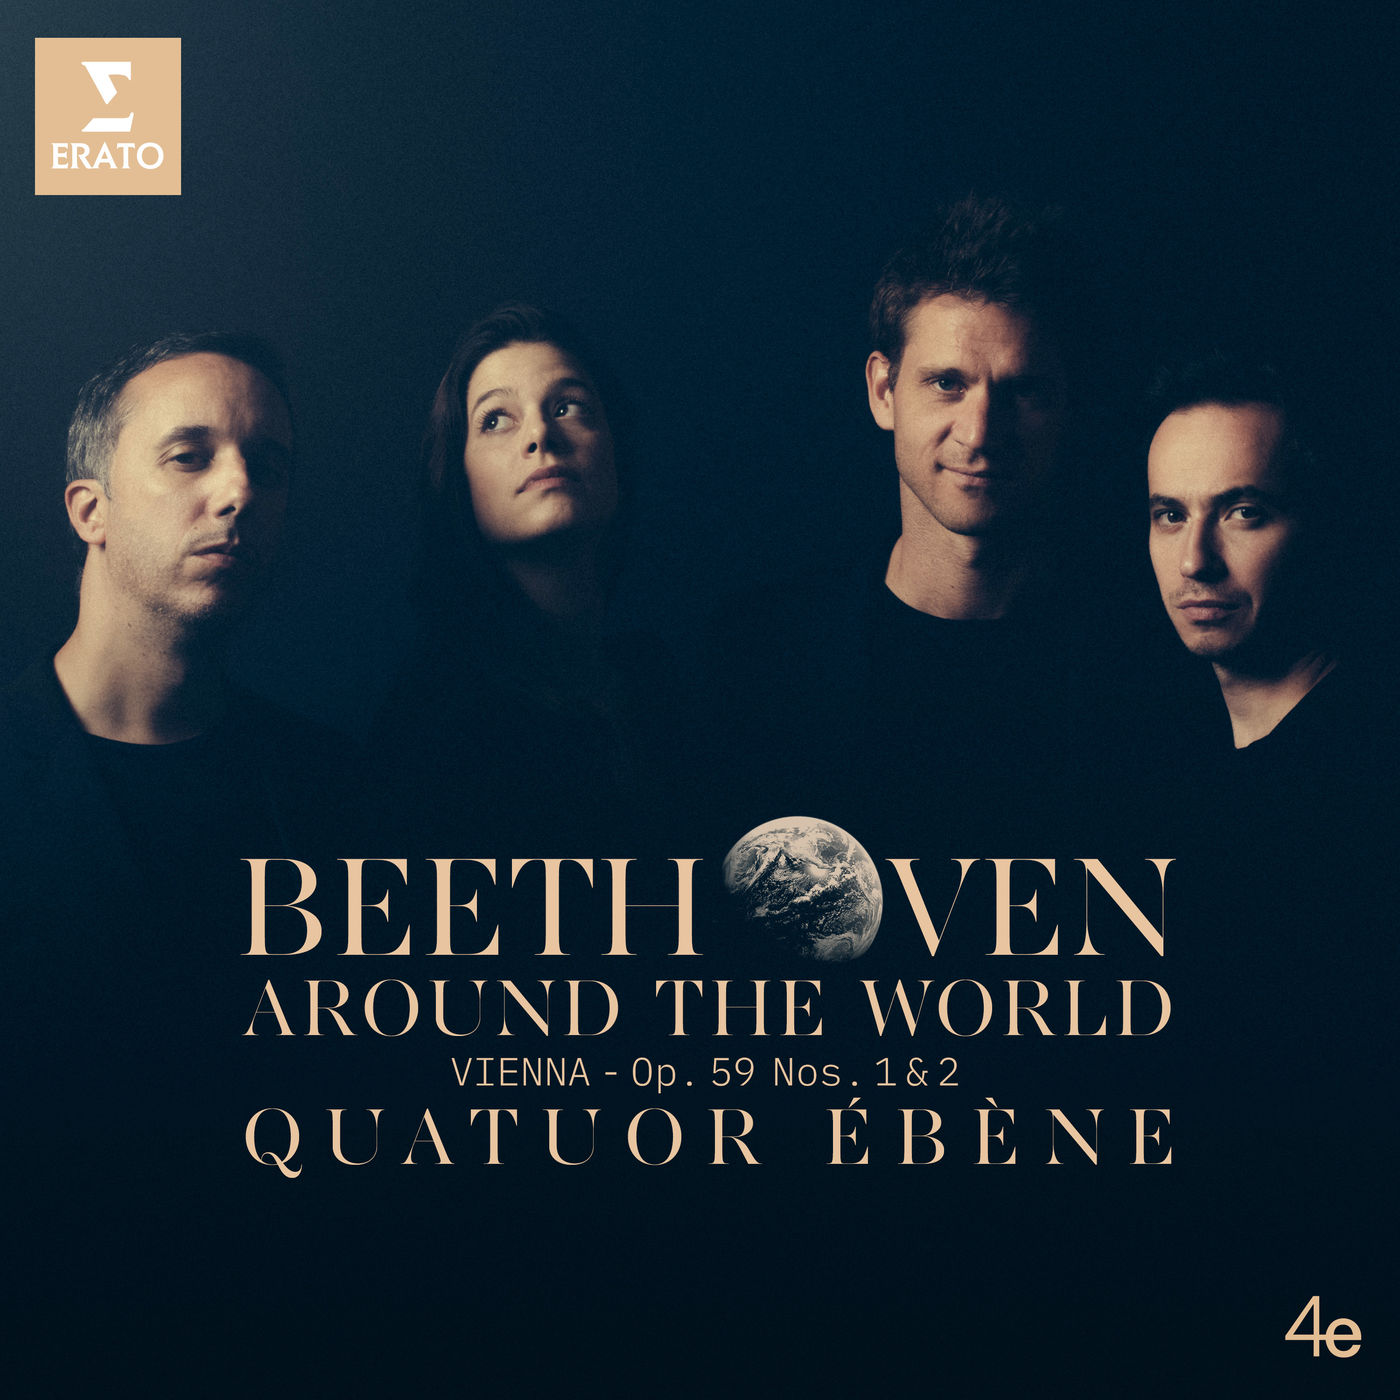 Quatuor Ebene - Beethoven Around the World: Vienna, Op. 59 Nos 1 & 2 (2019) [FLAC 24bit/96kHz]